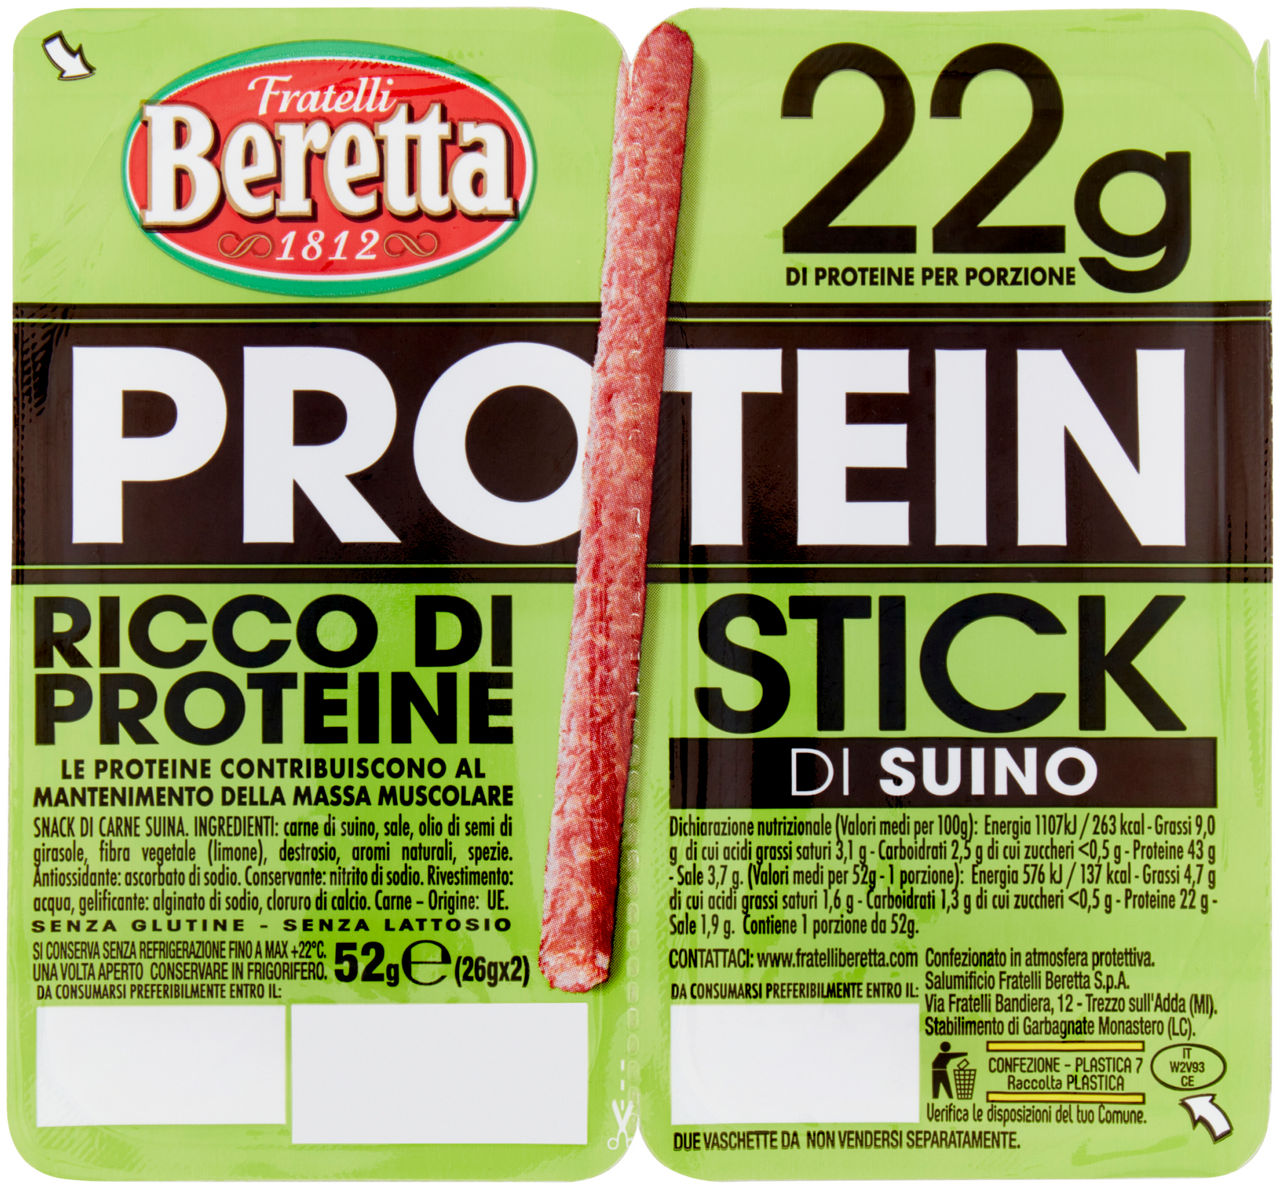 Protein stick di suino beretta g 52